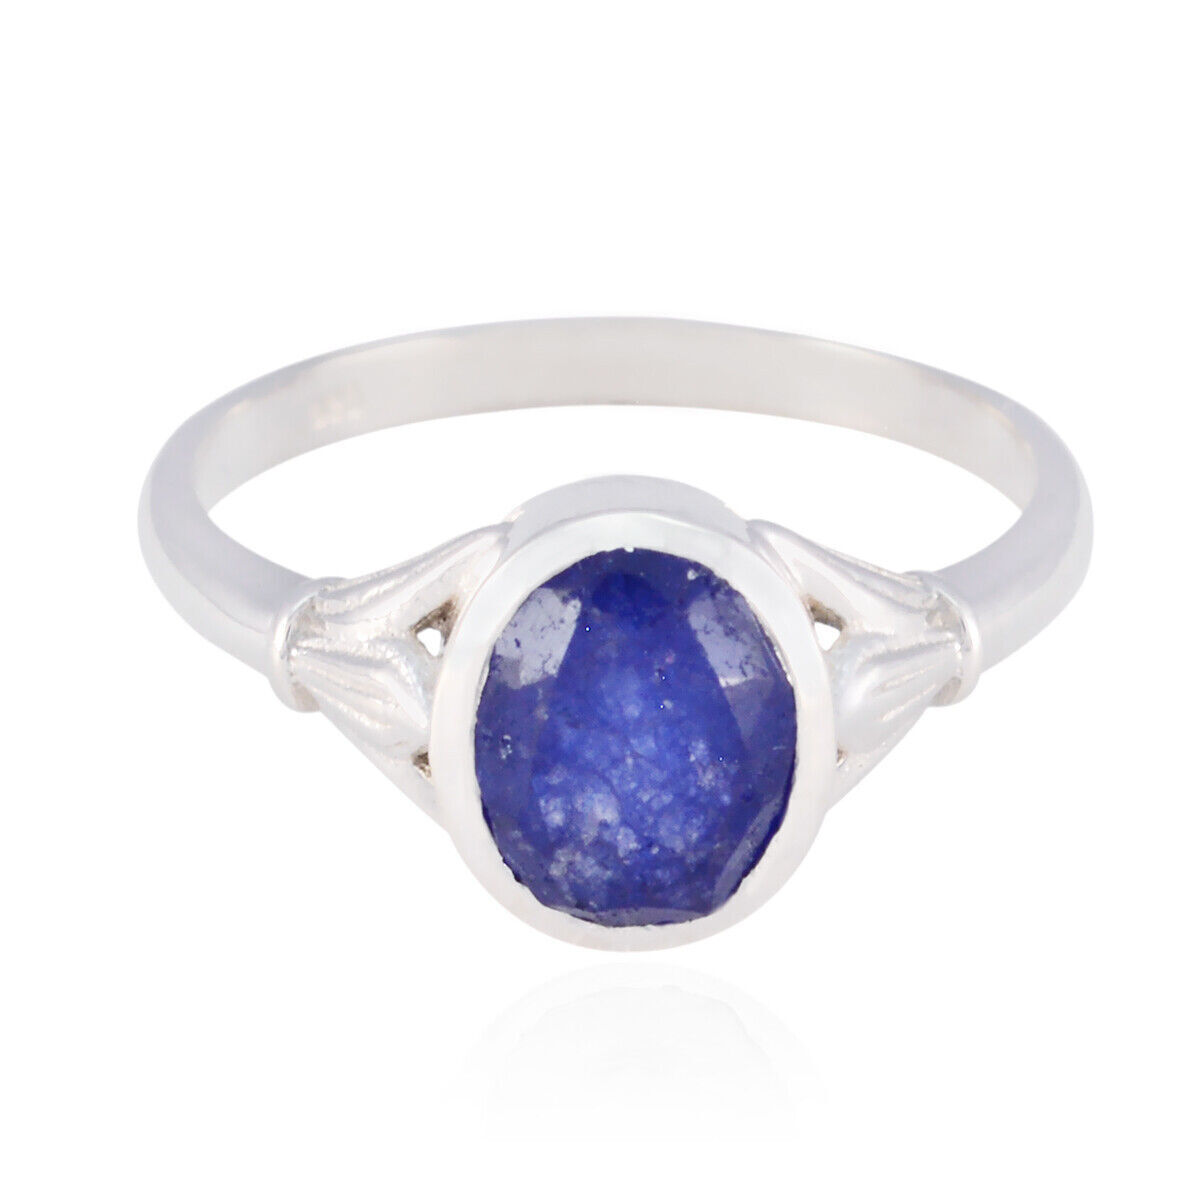 Primary image for Blauer Jaspis Sterling Silber Ring Handgemachter Schmuck für...